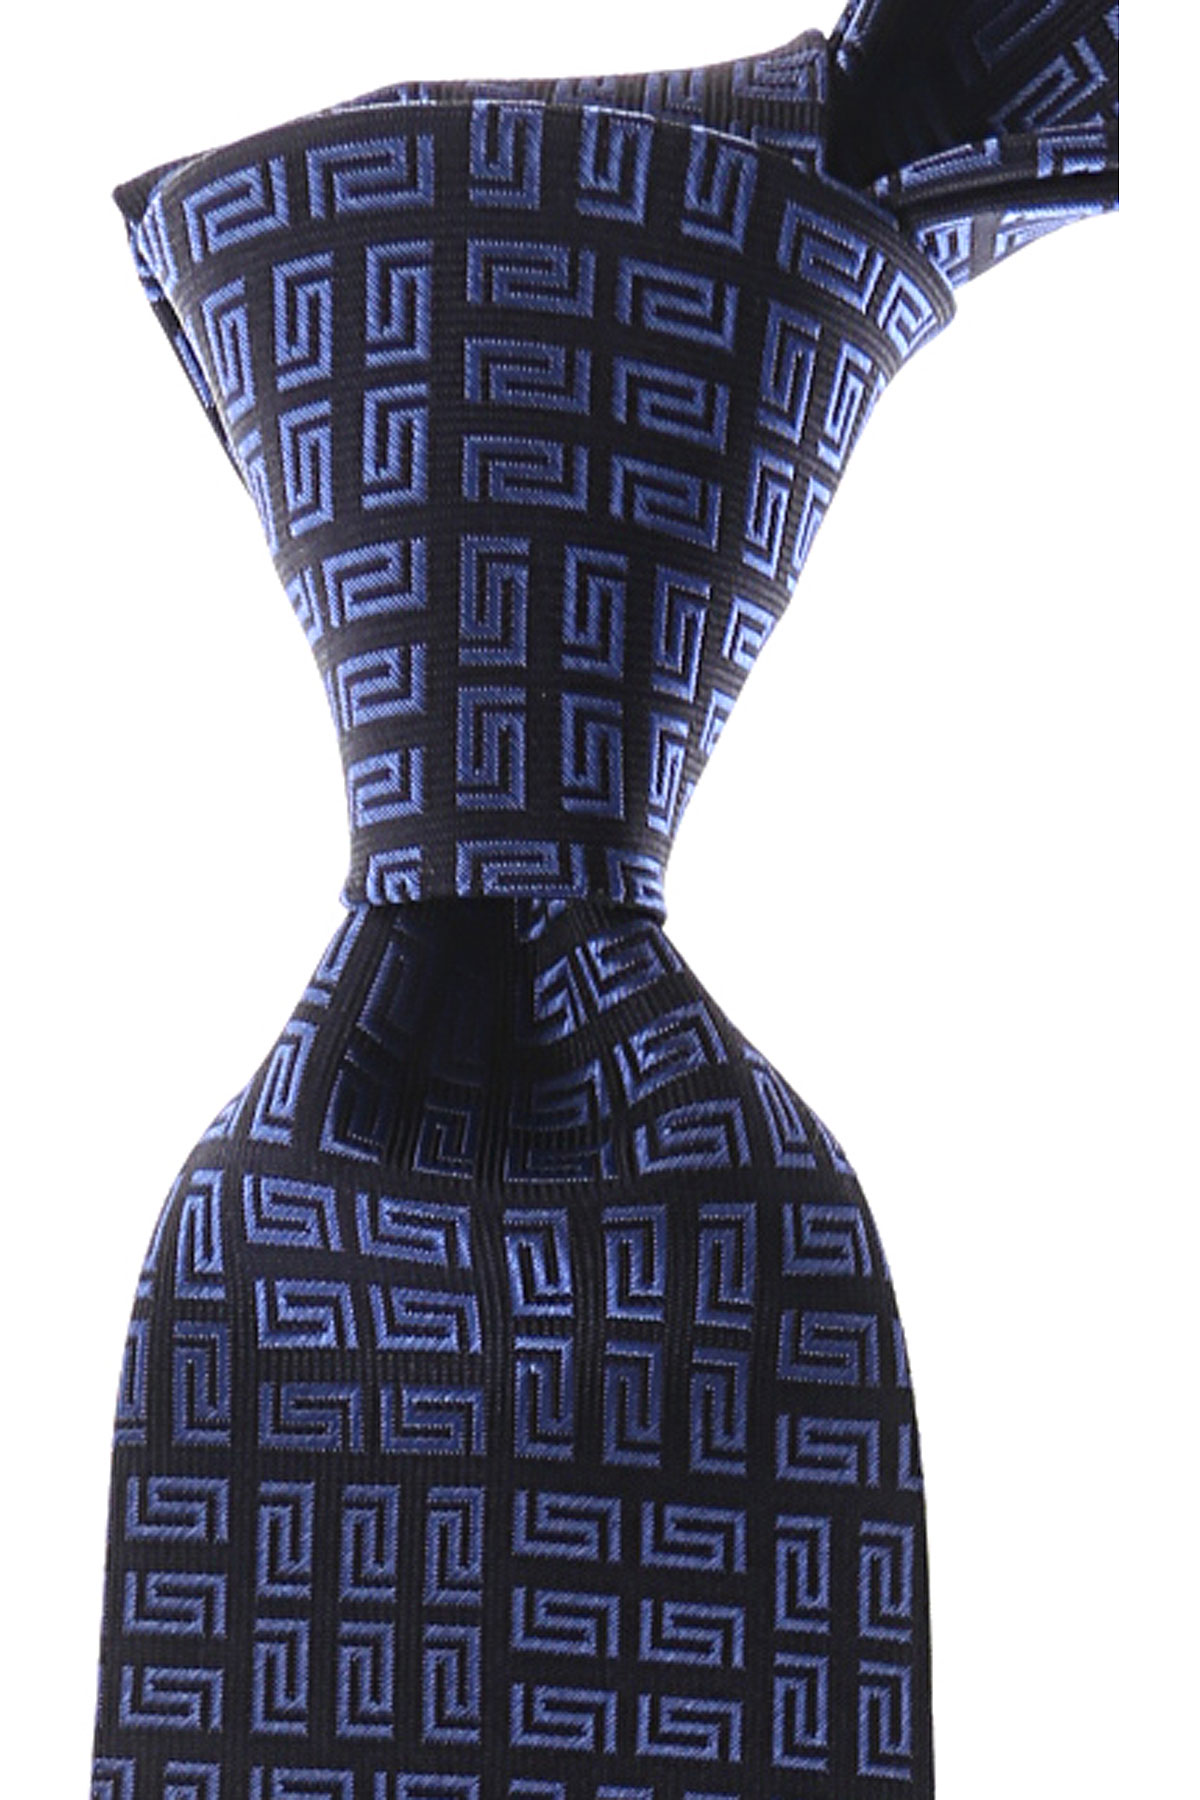 Cravates Gianni Versace , Bleu nuit, Soie, 2017